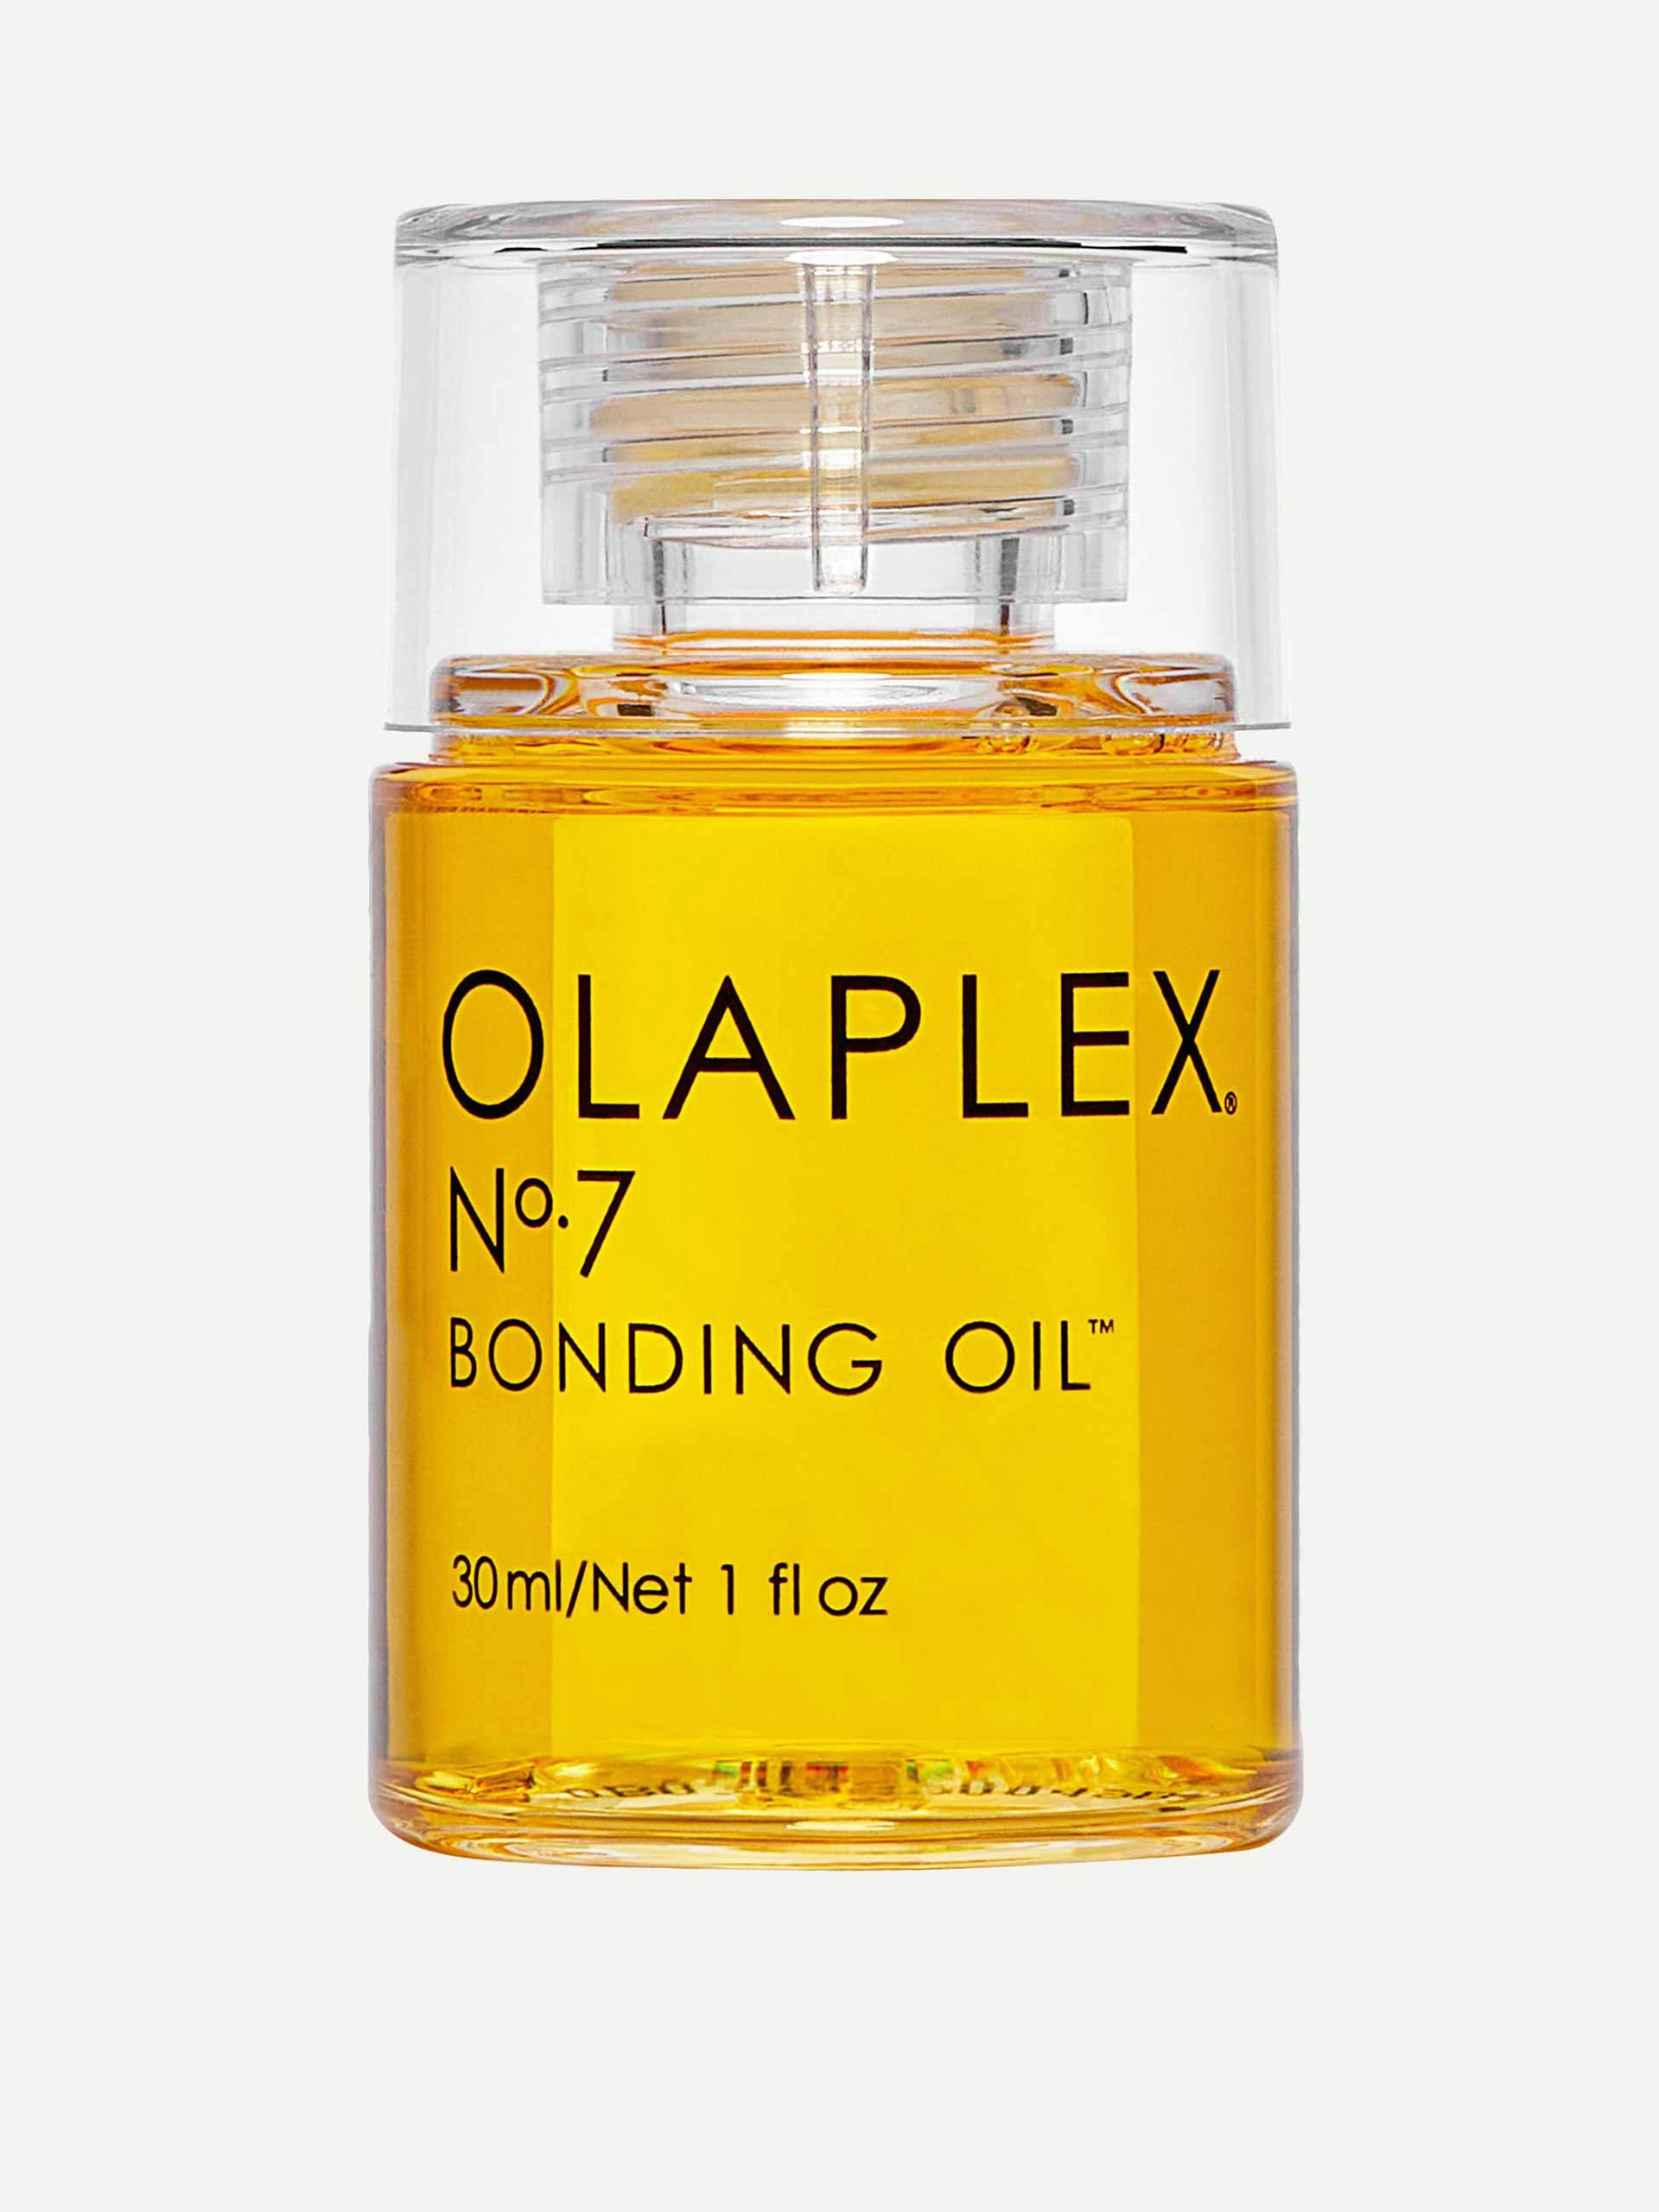 Bonding oil